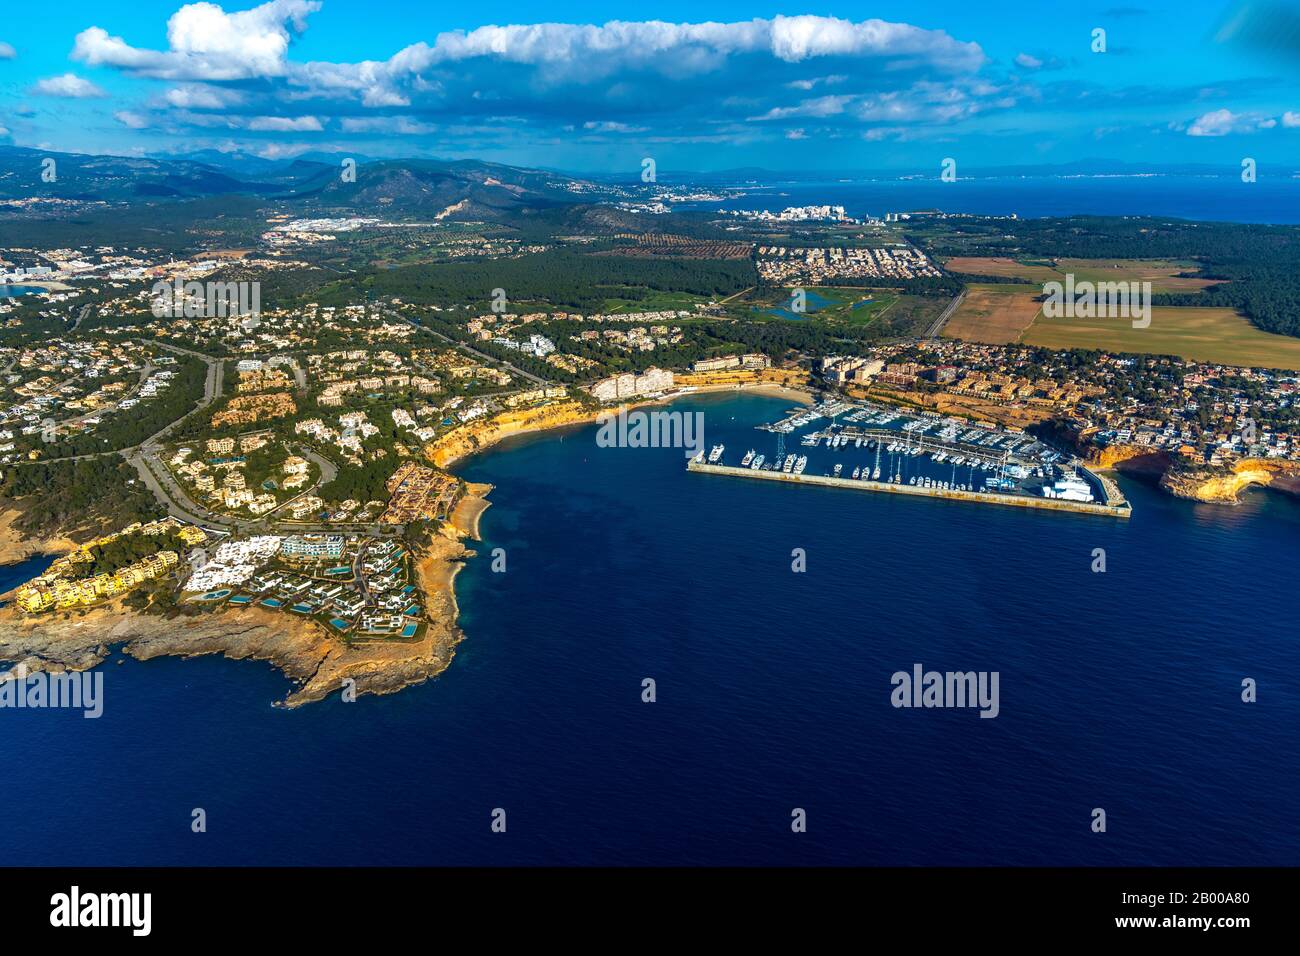 Vista aérea, Puerto Adriano, puerto, lujoso complejo residencial Cap Adriano, el Toro, Europa, Islas Baleares, España, Mallorca, barcos, muelle de barcos, barco Foto de stock